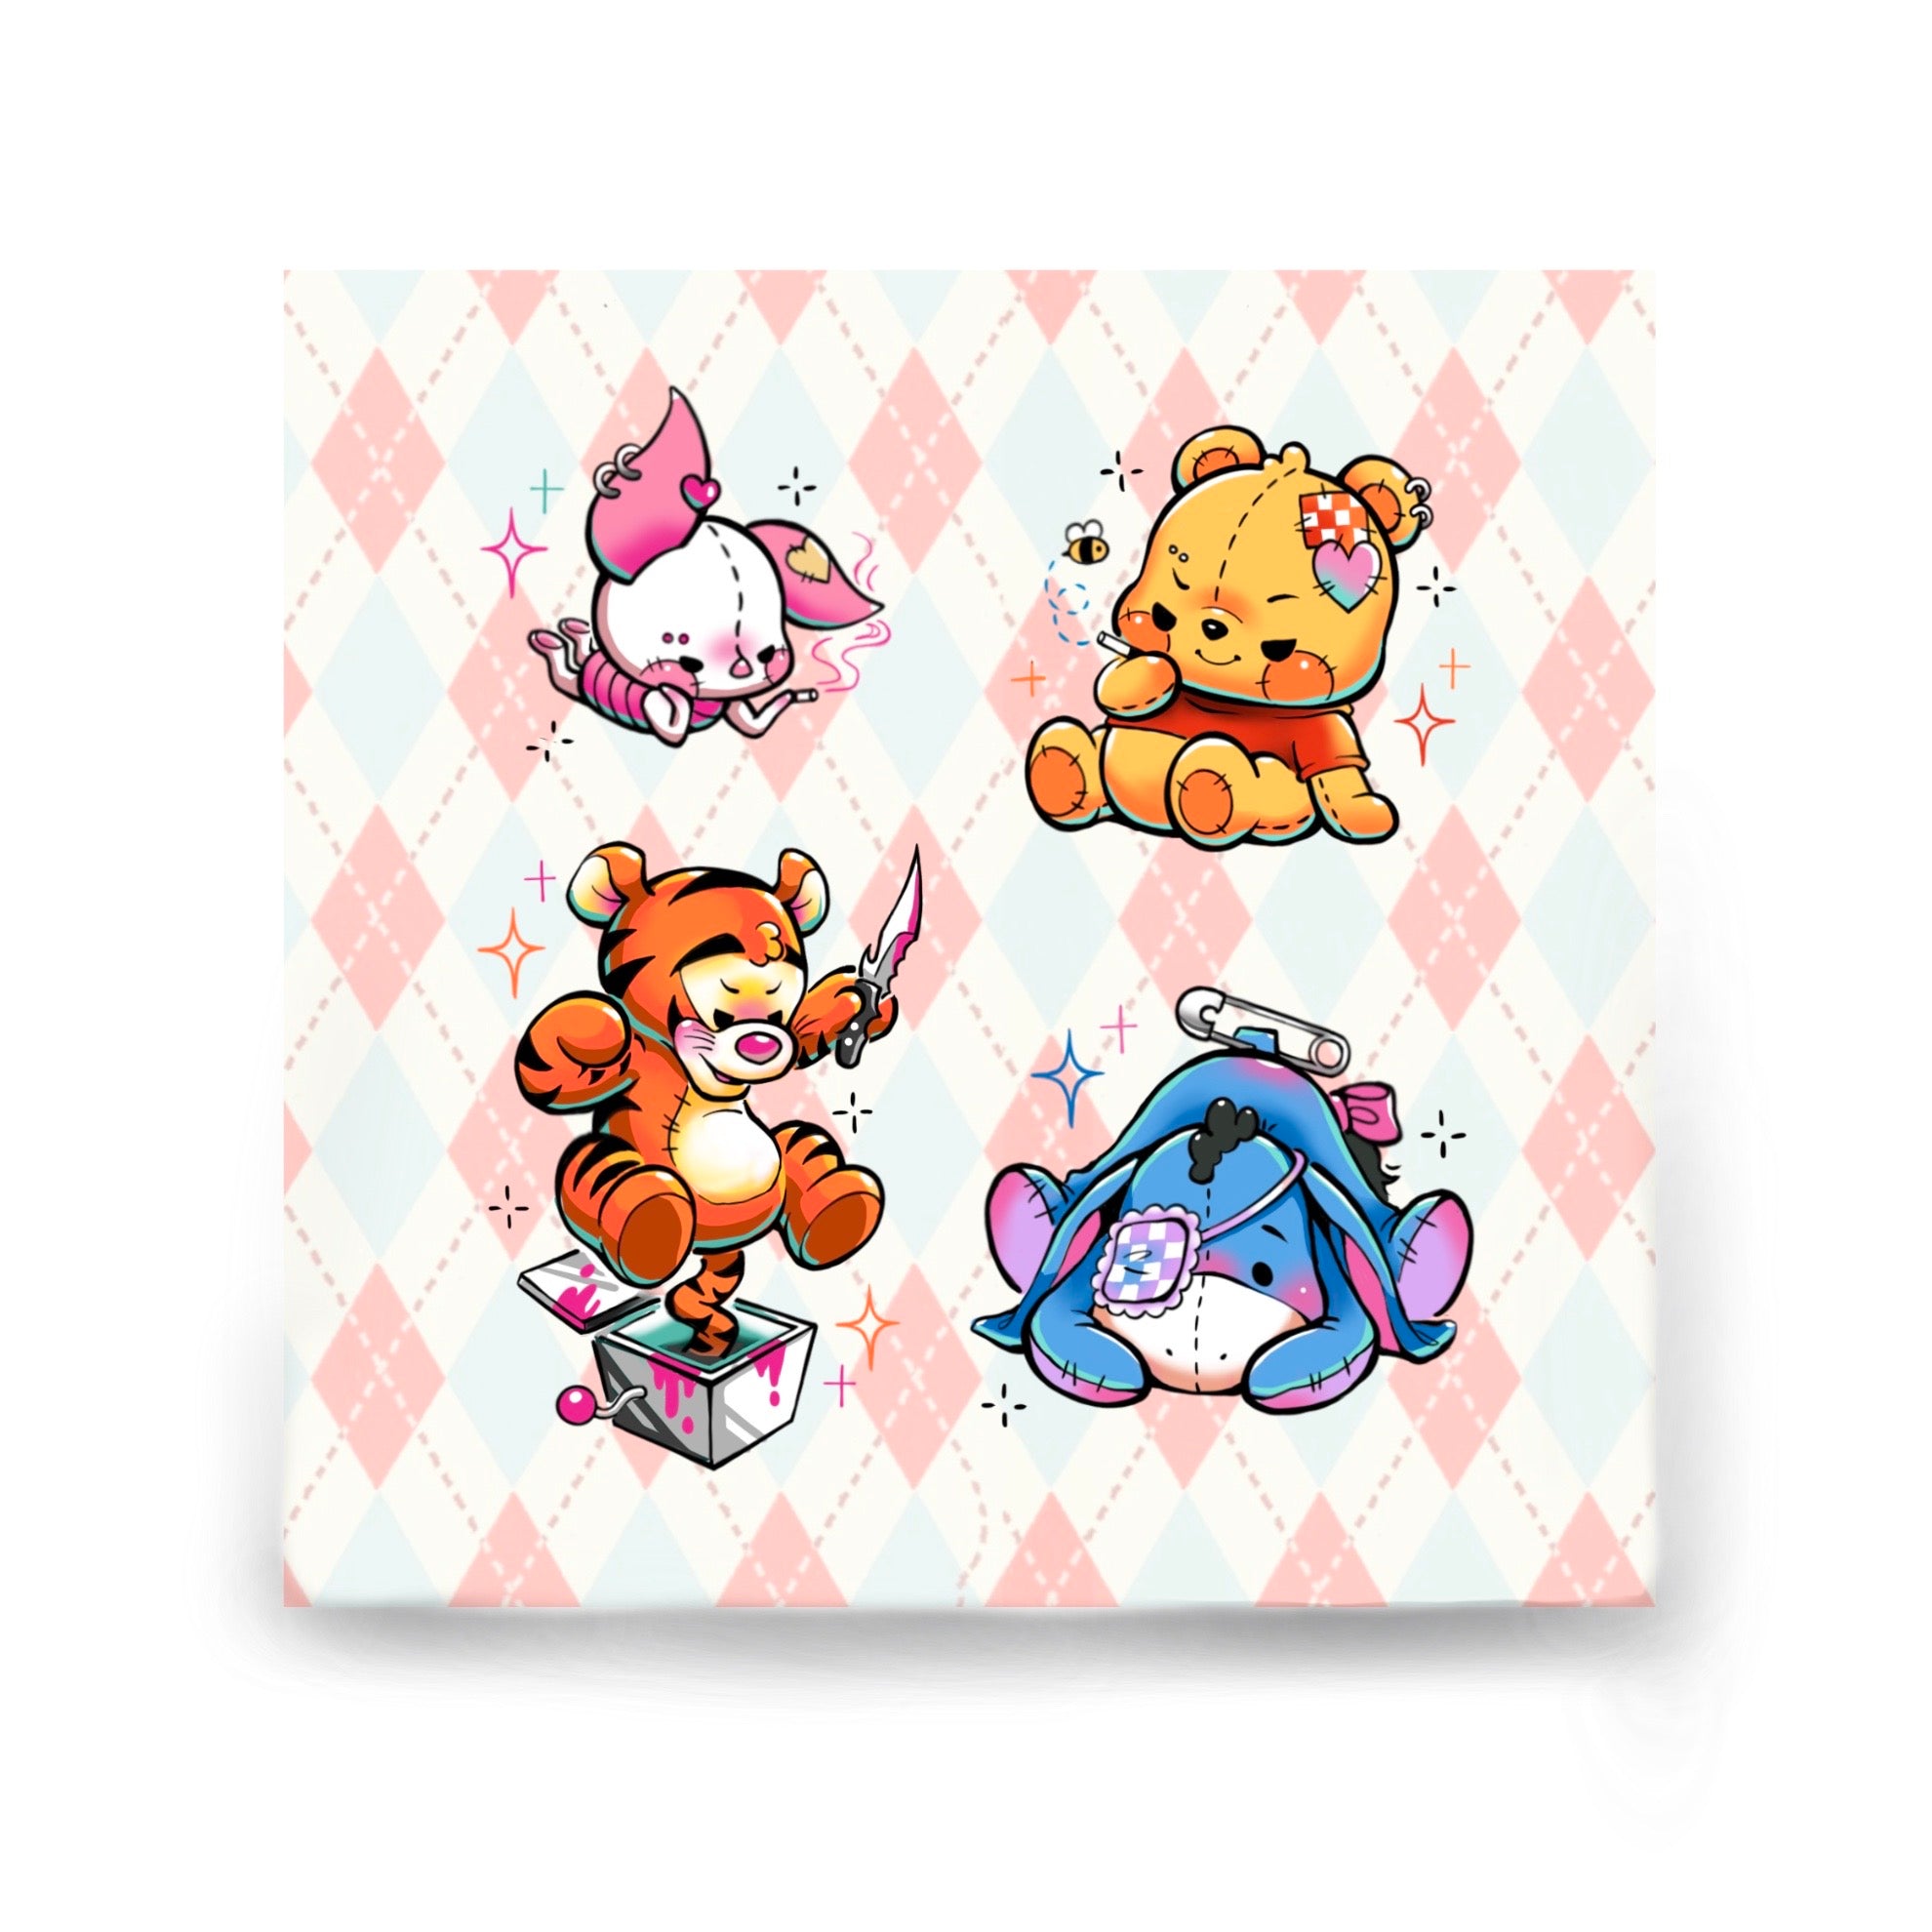 [QIQI TATTOO] Winnie the Pooh Set - Sticker Sheet